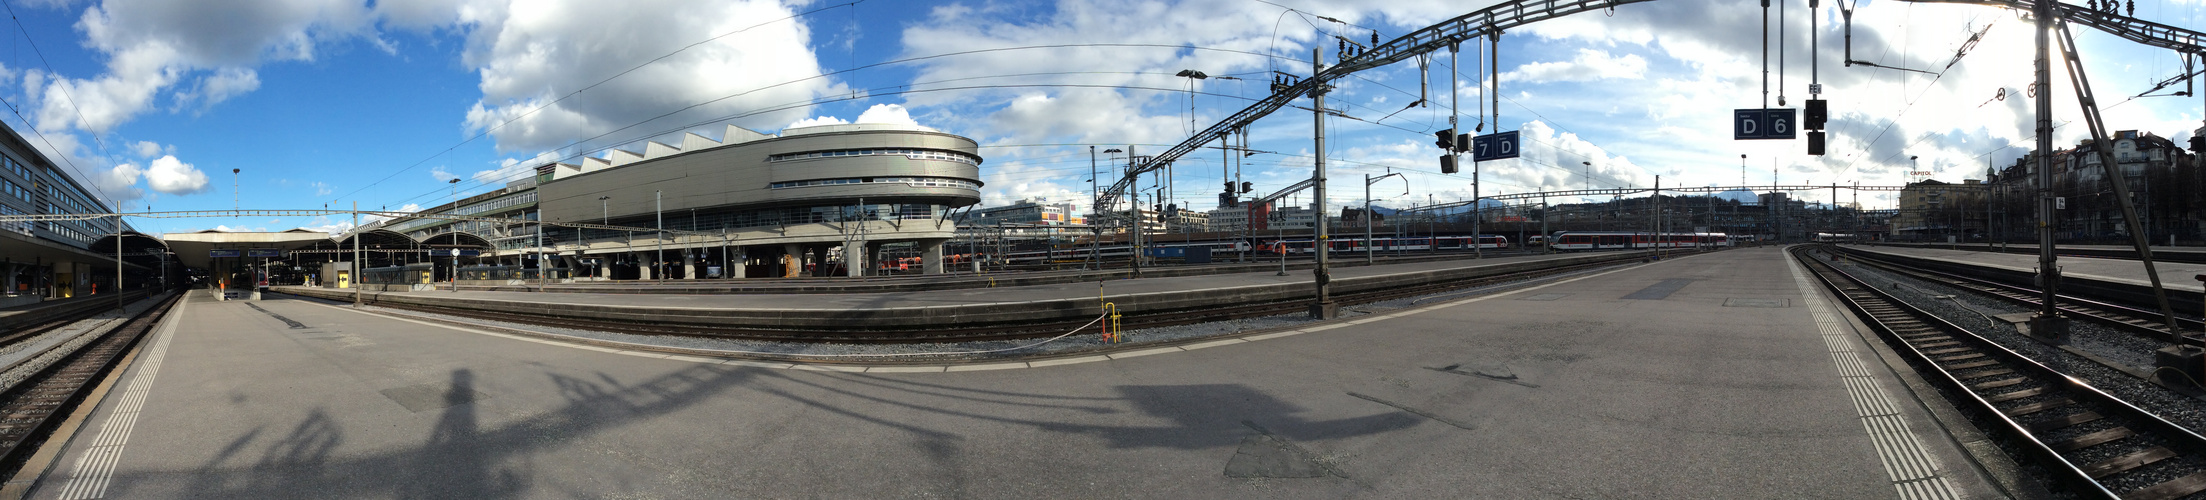 Luzern (Switzerland) - Railway Station Panoramic View